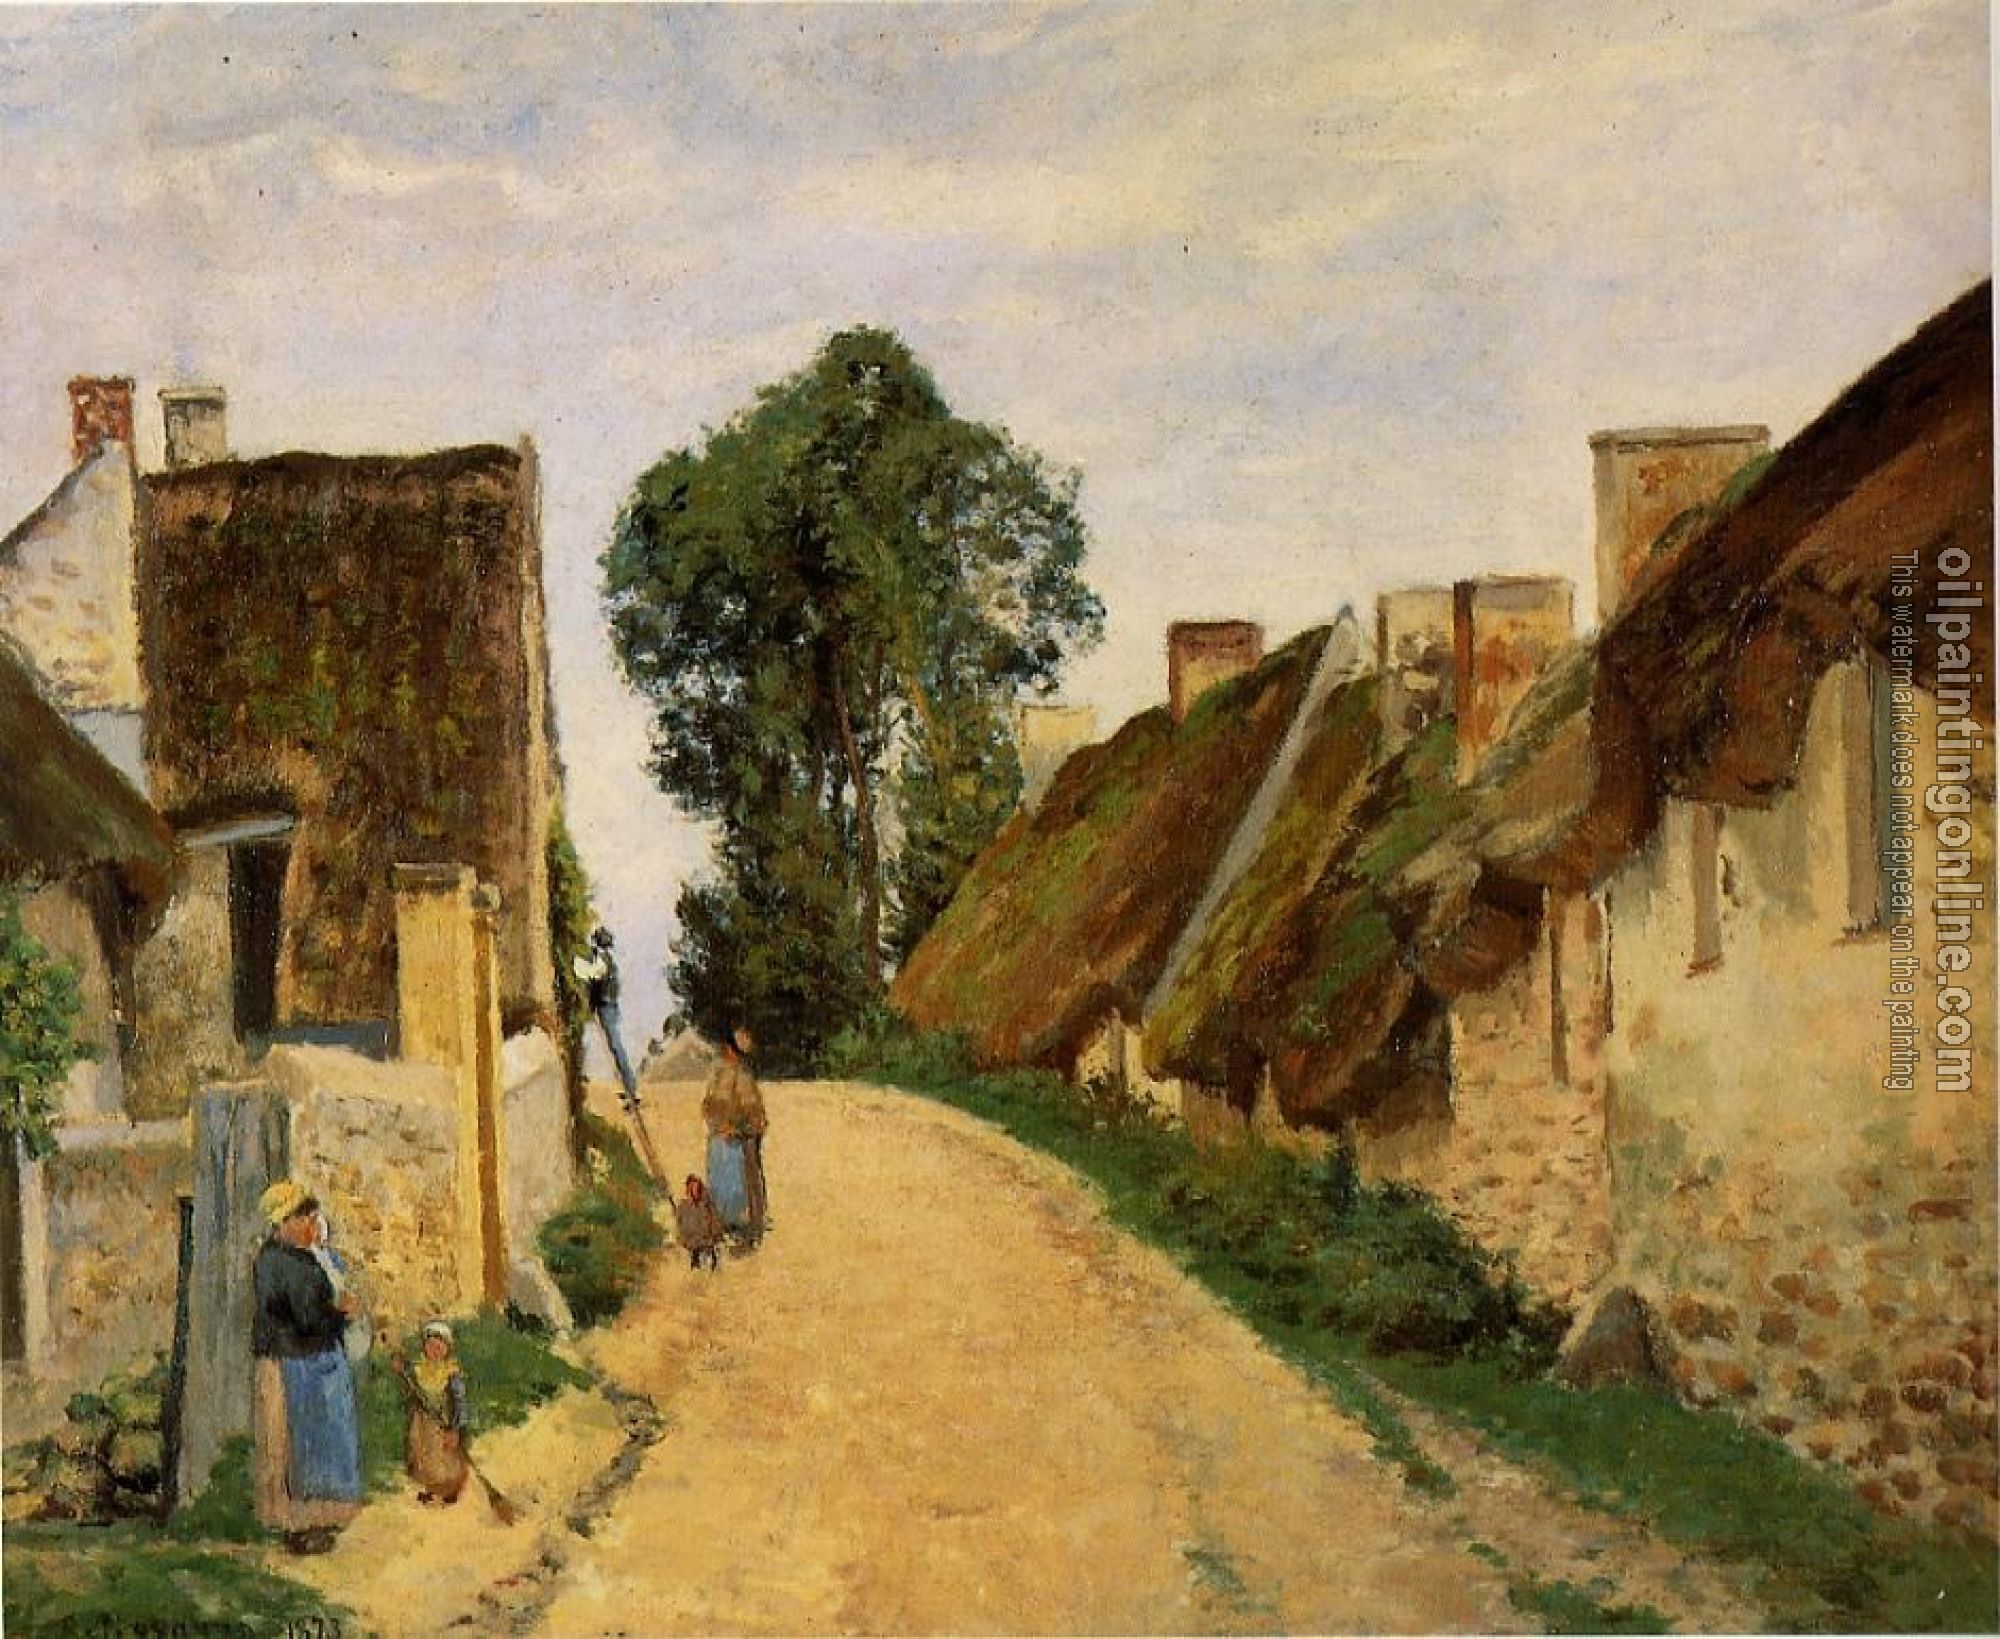 Pissarro, Camille - Village Street, Auvers-sur-Oise